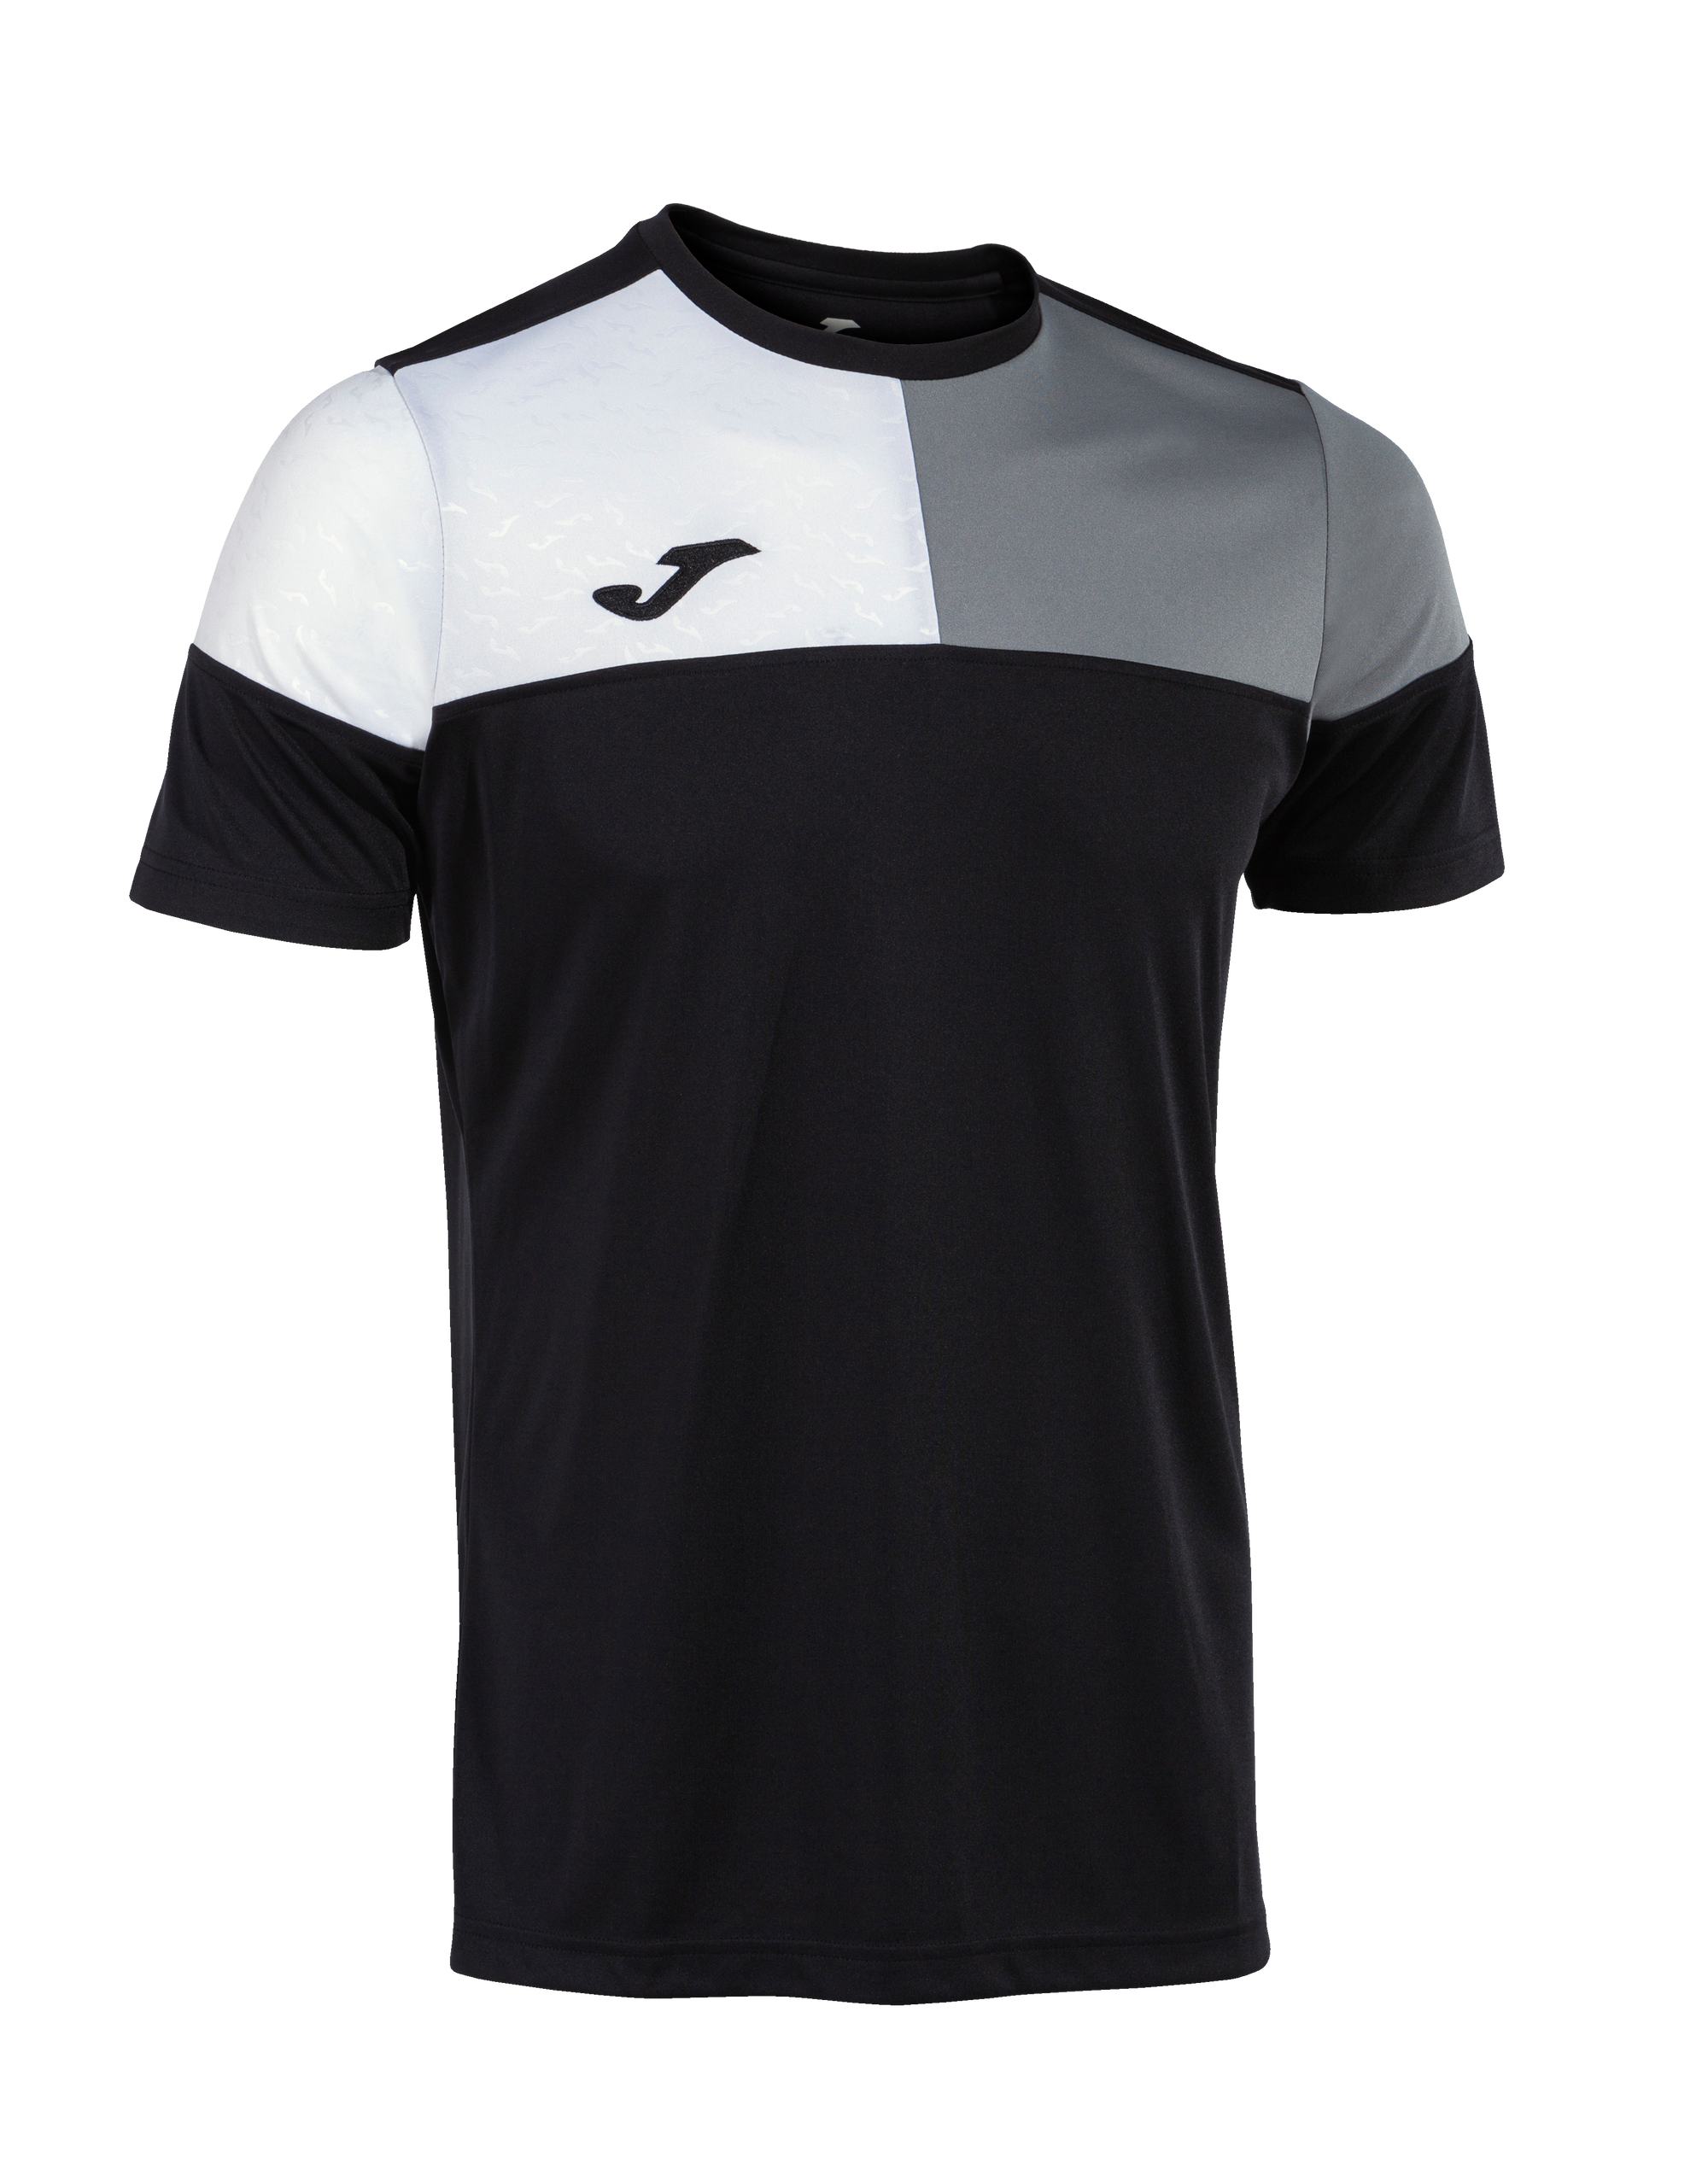 Joma Crew V Short Sleeve T-Shirt - Black/Medium Grey